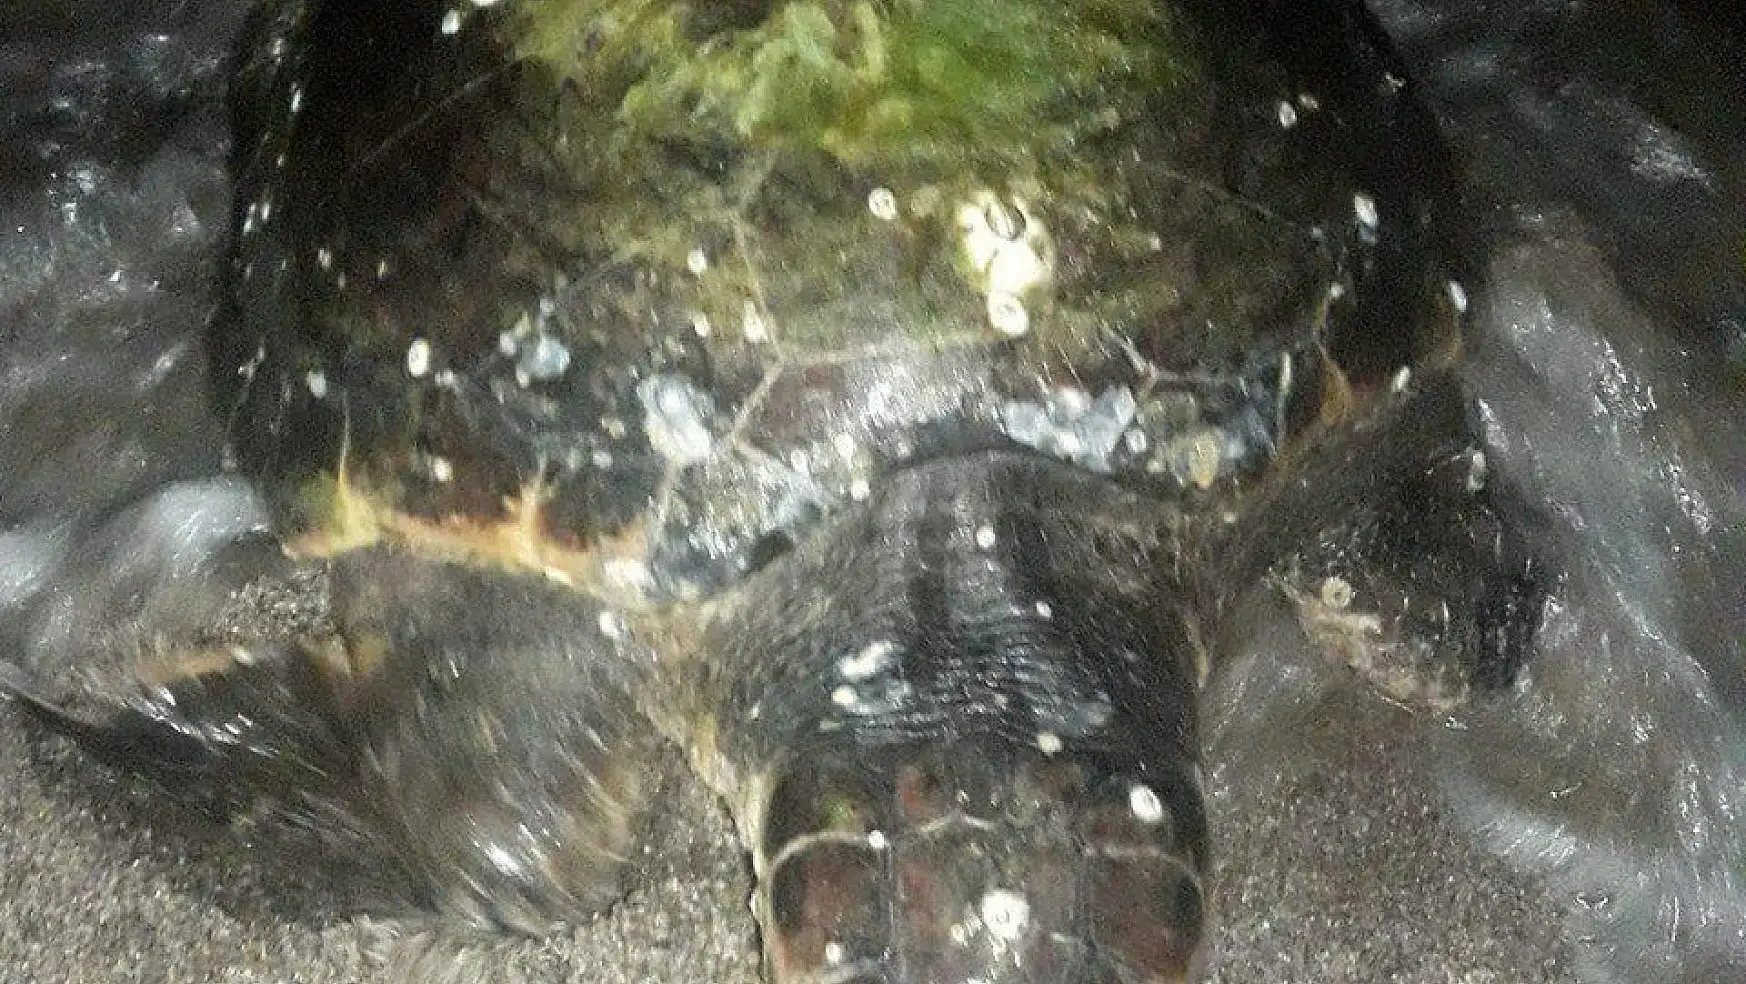 Deniz üstünde minder sandığı cisim 45 kiloluk dev deniz kaplumbağası çıktı